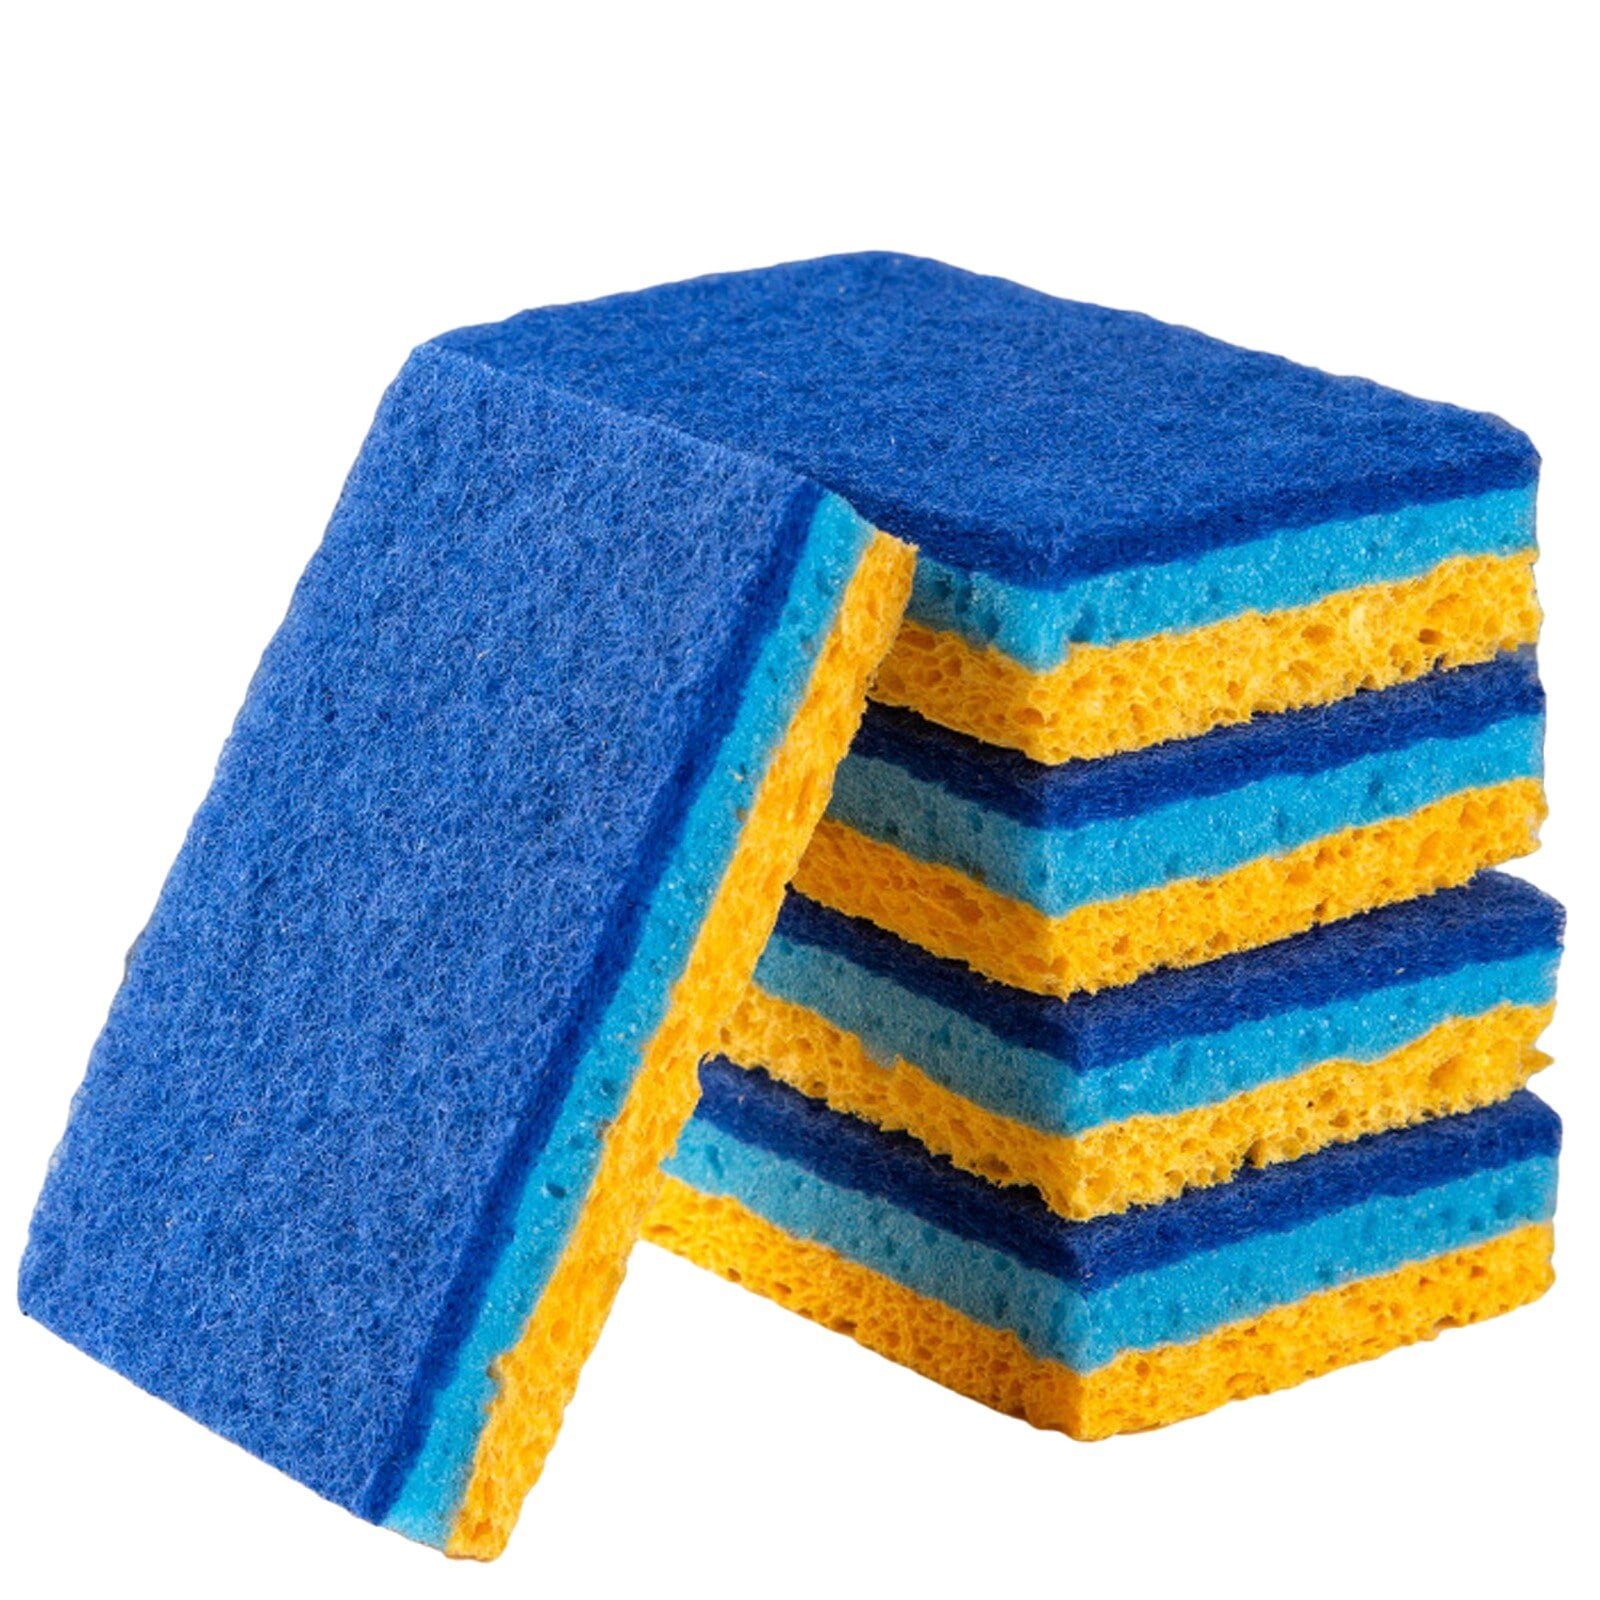 Durable Double-Sided Dishwashing Sponge